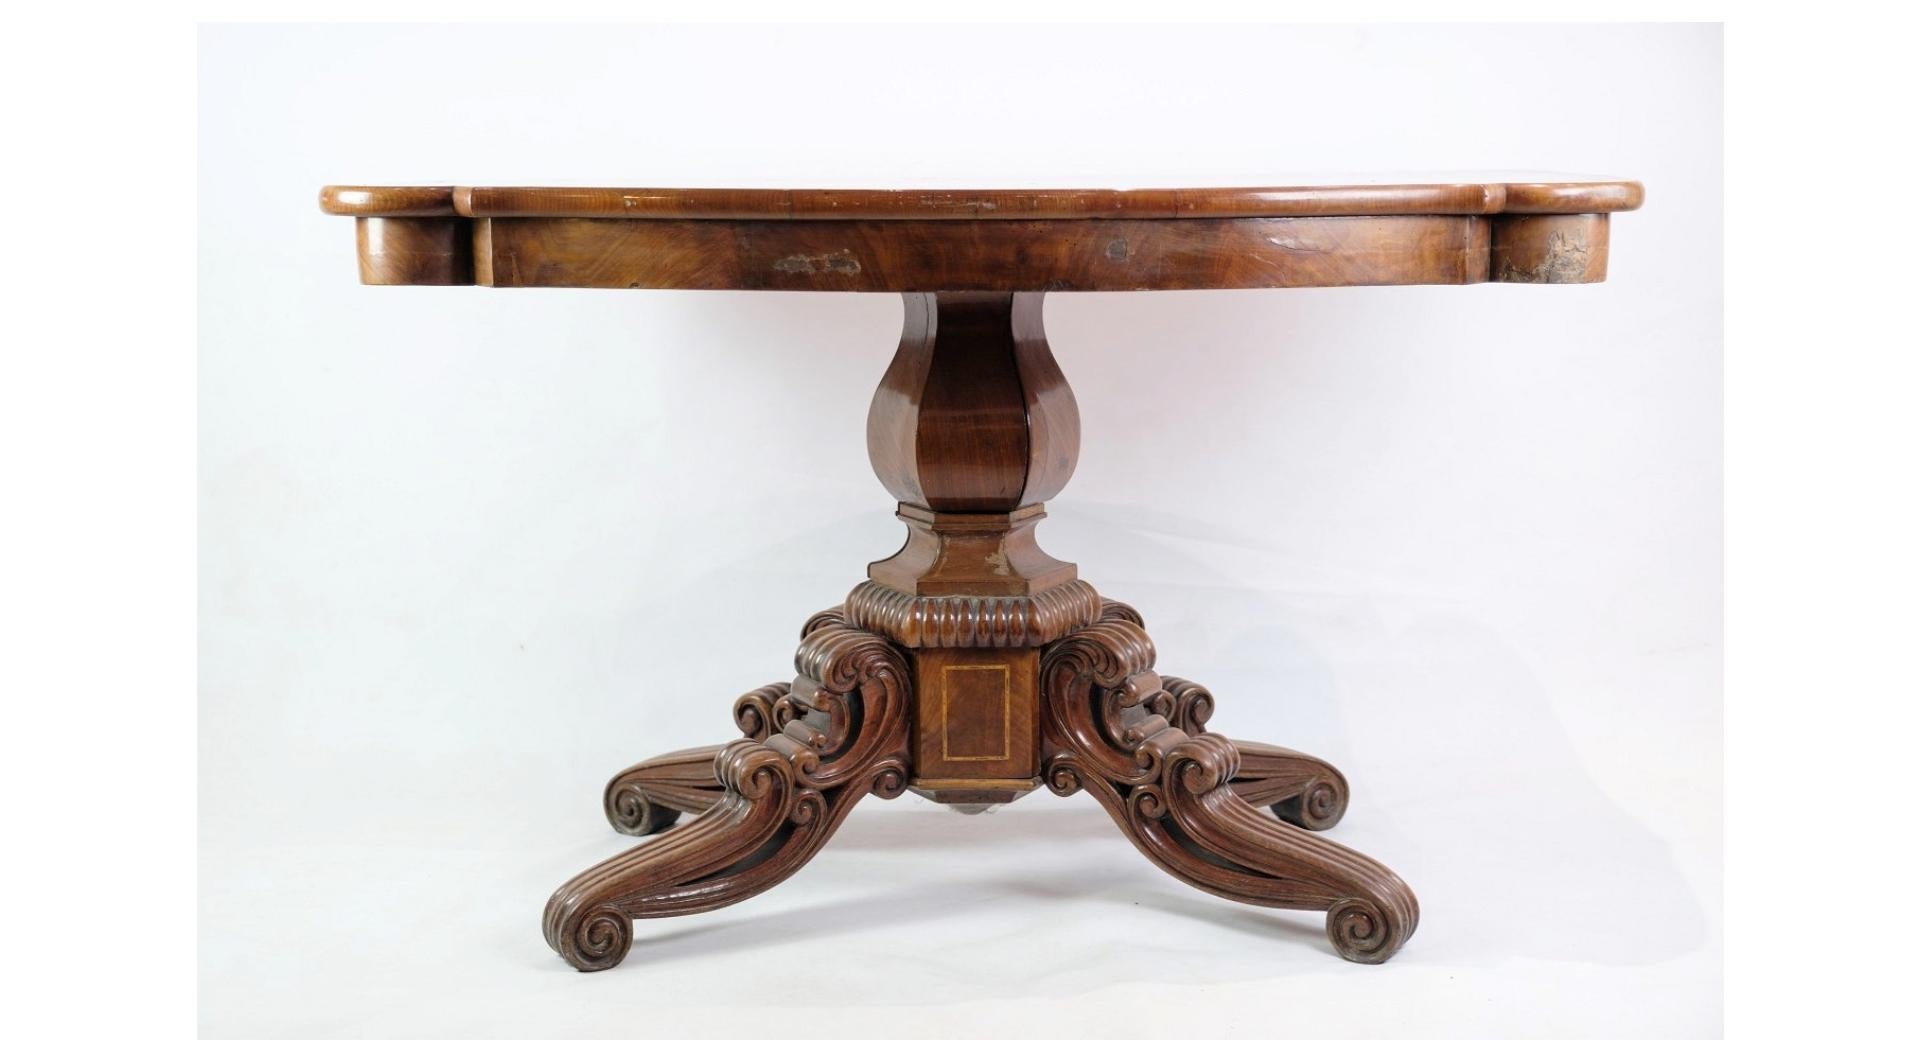 La table à colonnes de la fin de l'Empire, datant des années 1840, est un magnifique exemple de l'artisanat mobilier de cette époque. Fabriquée à partir d'un riche acajou, cette table respire l'élégance et la sophistication, avec ses sculptures